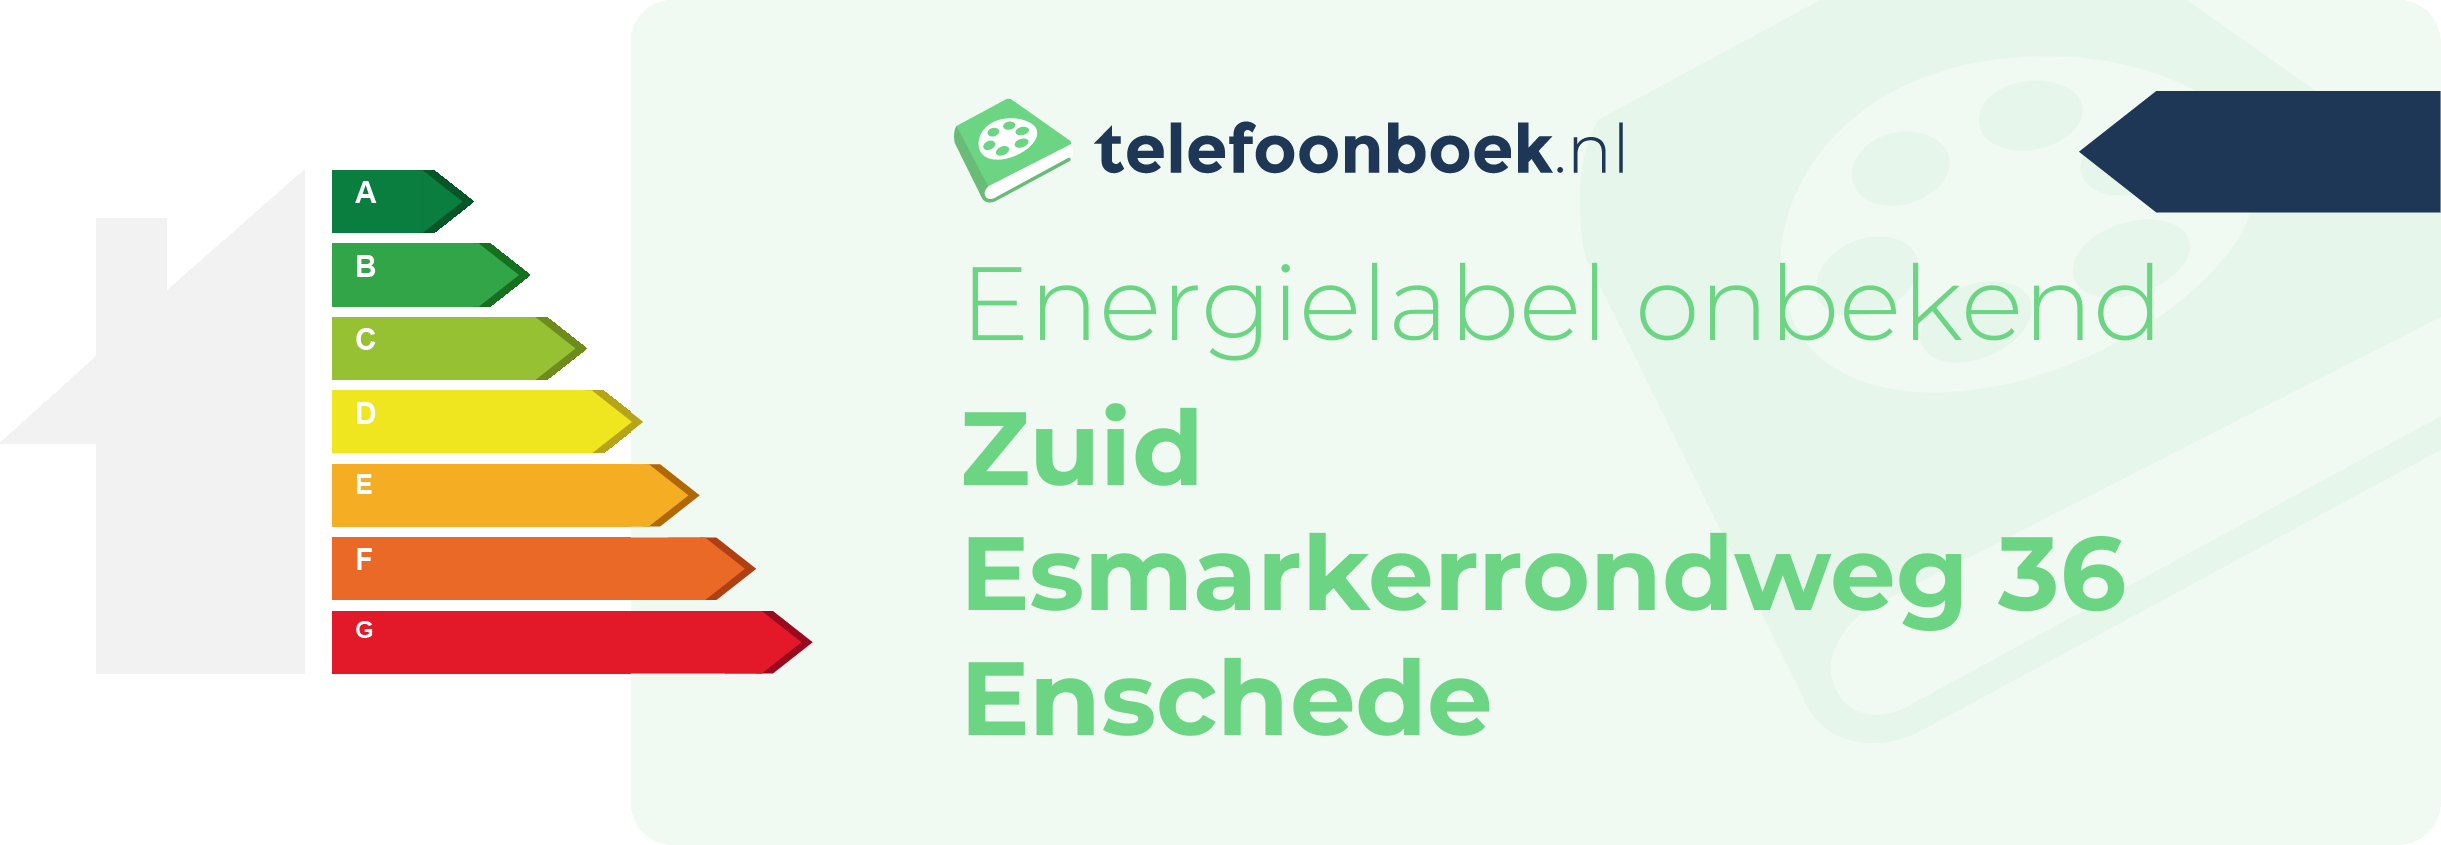 Energielabel Zuid Esmarkerrondweg 36 Enschede